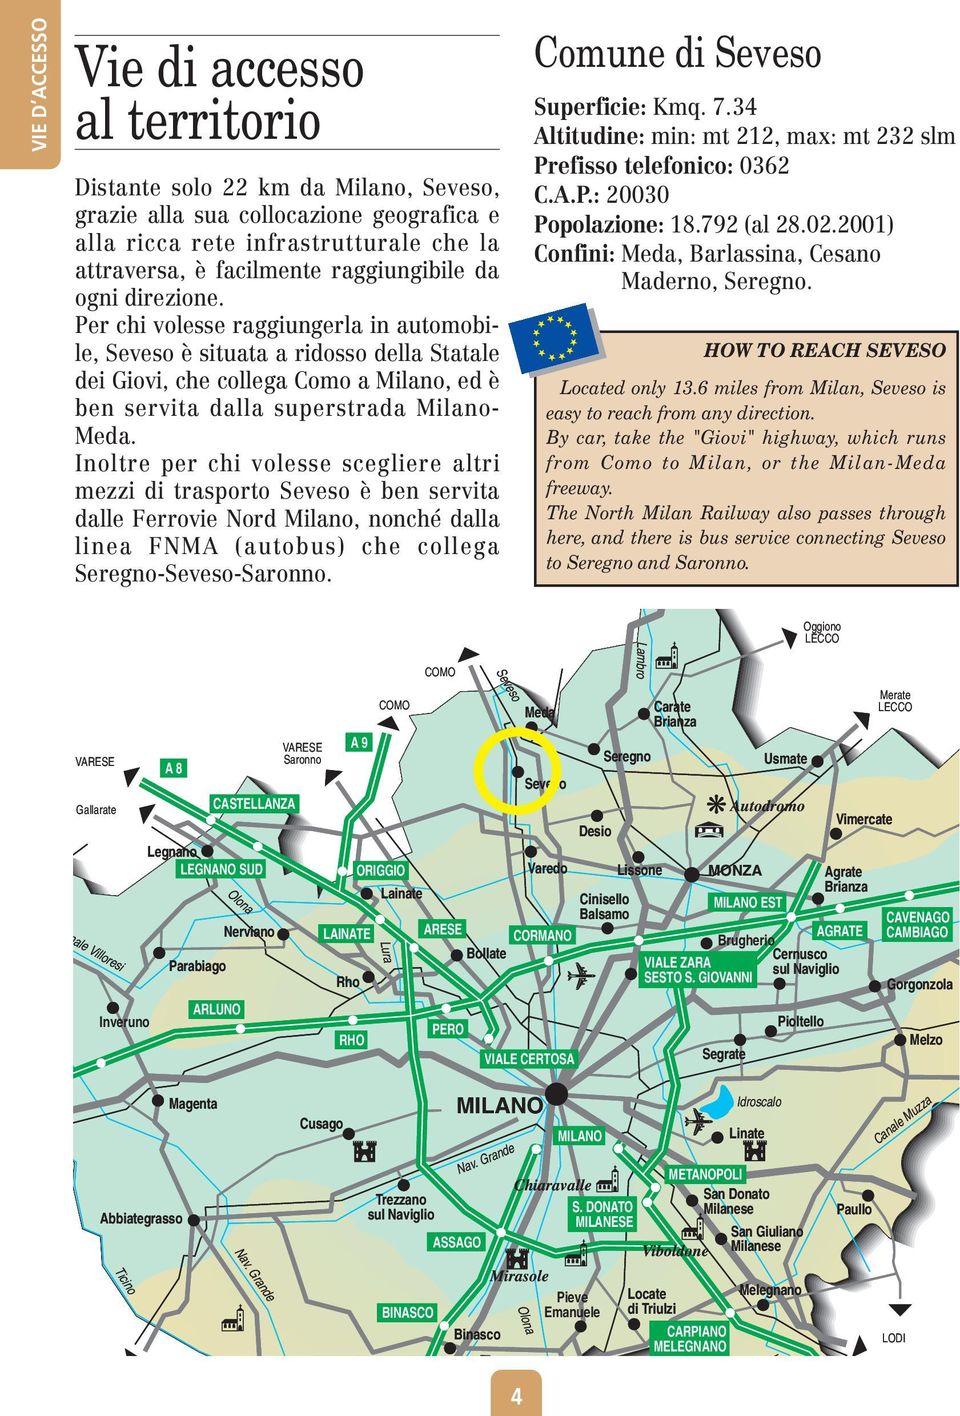 Per chi volesse raggiungerla in automobile, Seveso è situata a ridosso della Statale dei Giovi, che collega Como a Milano, ed è ben servita dalla superstrada Milano- Meda.